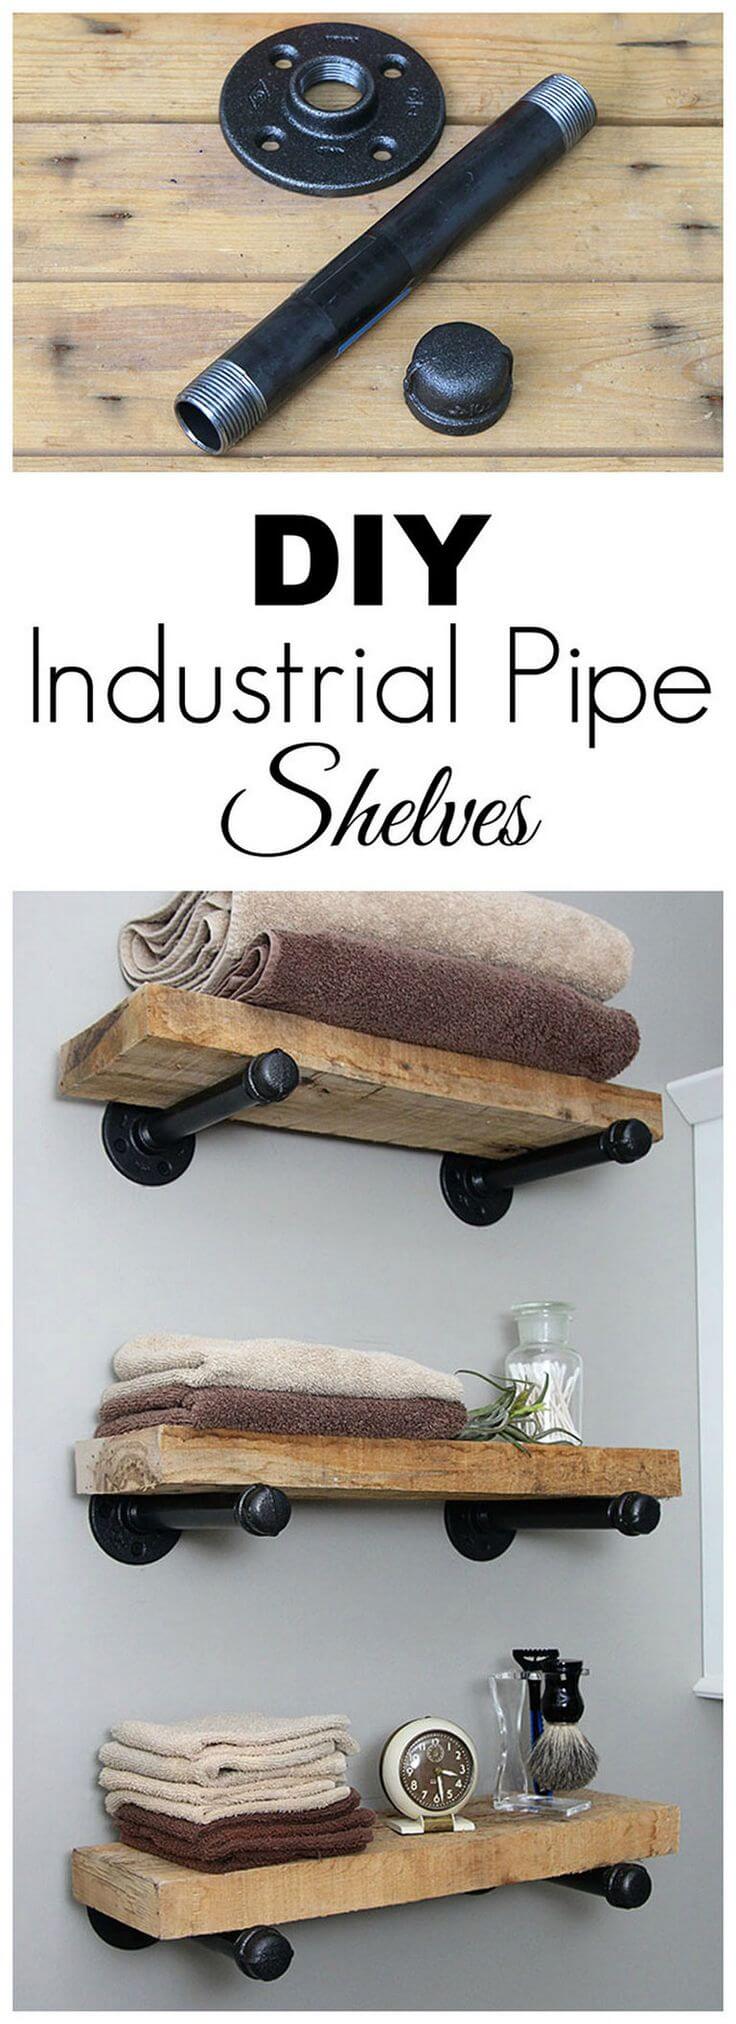 16. DIY Industrial Pipe Shelves